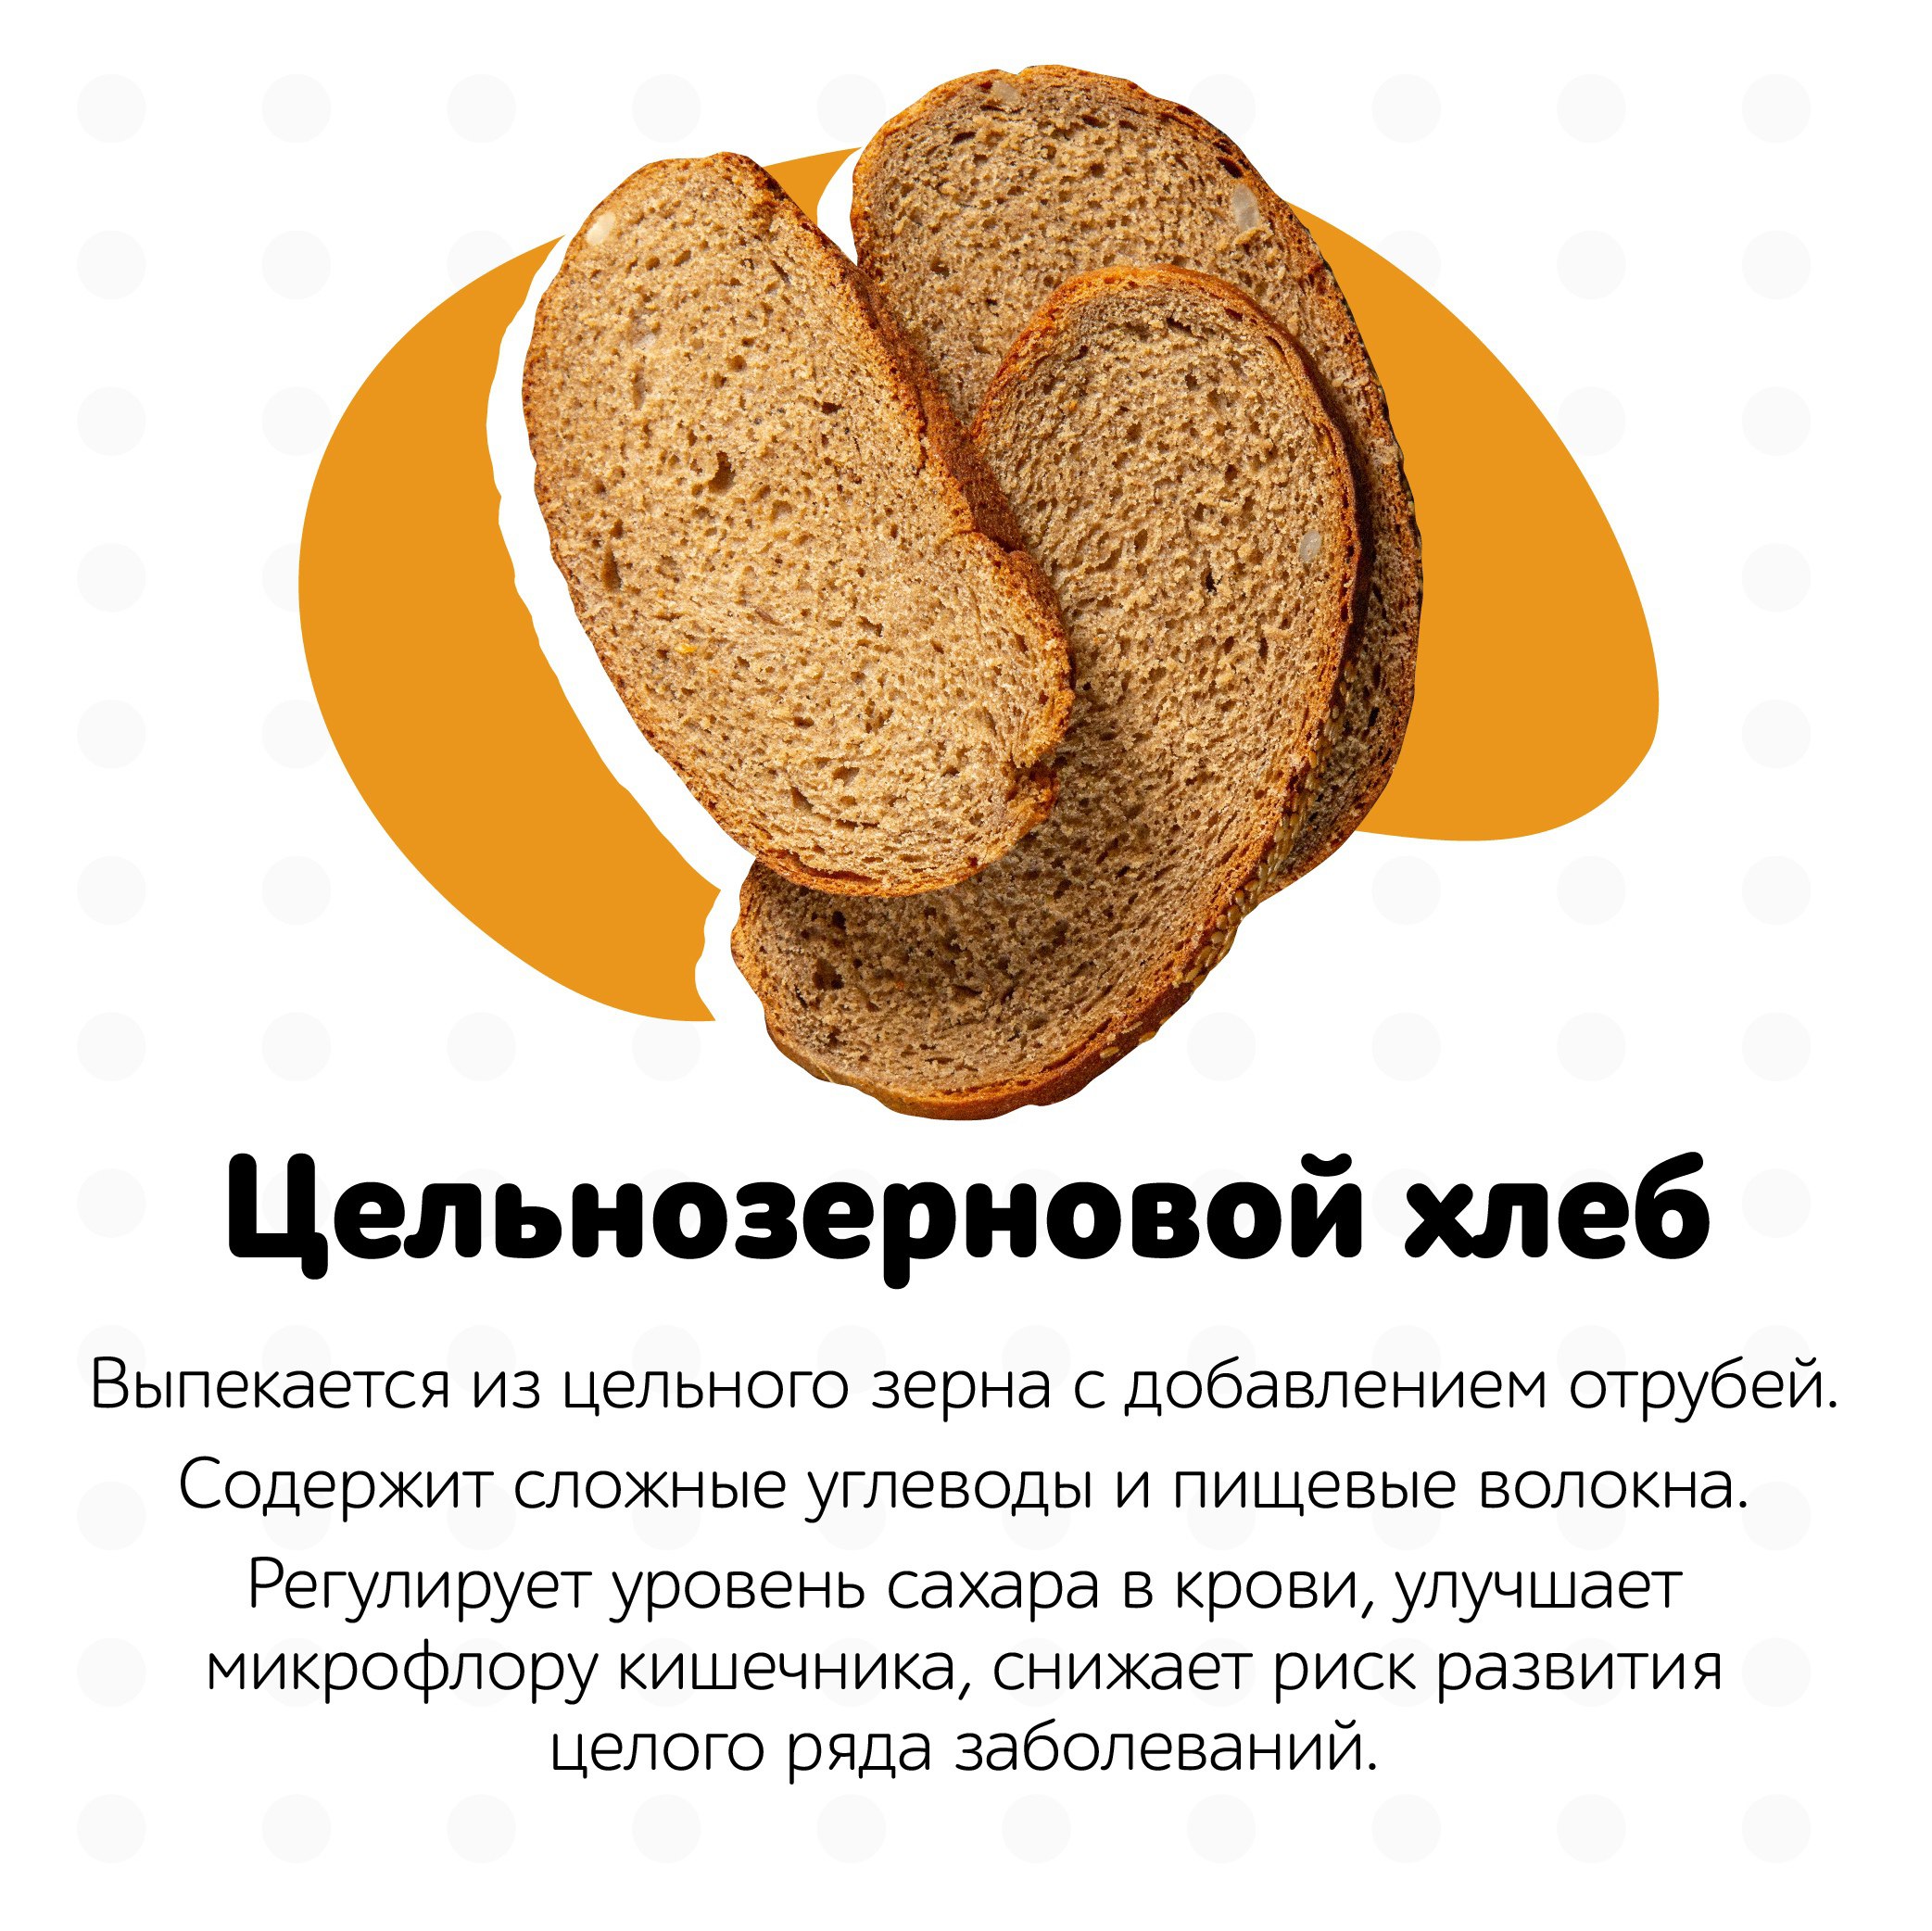 Сколько грамм углеводов в хлебе. Хлеб всему голова. Углеводы в хлебе. Хлеб без углеводов. Самый полезный хлеб для организма.